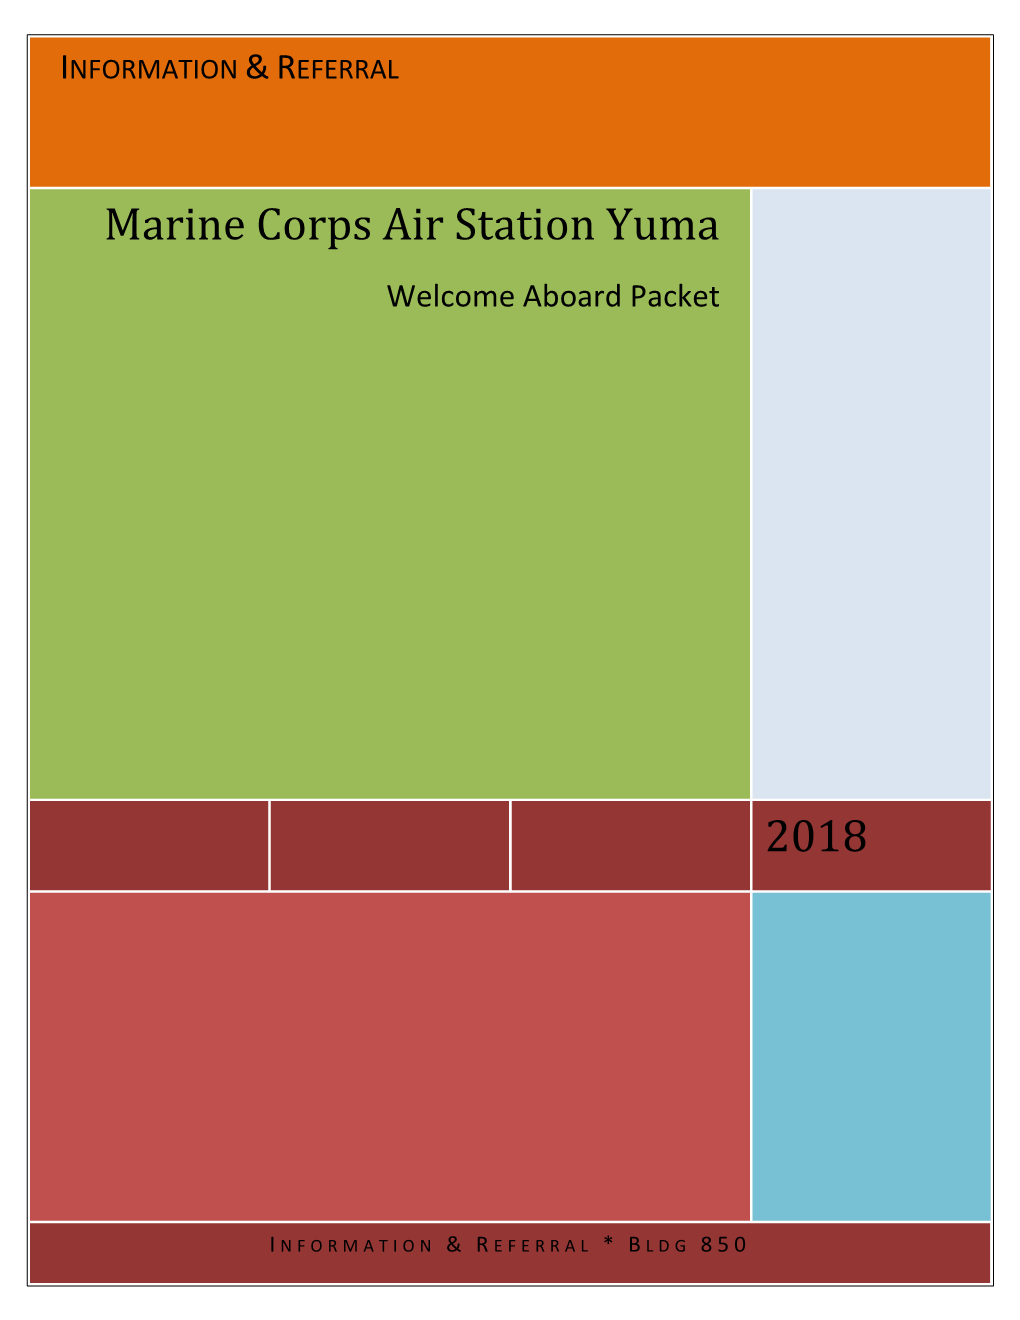 2018 Marine Corps Air Station Yuma